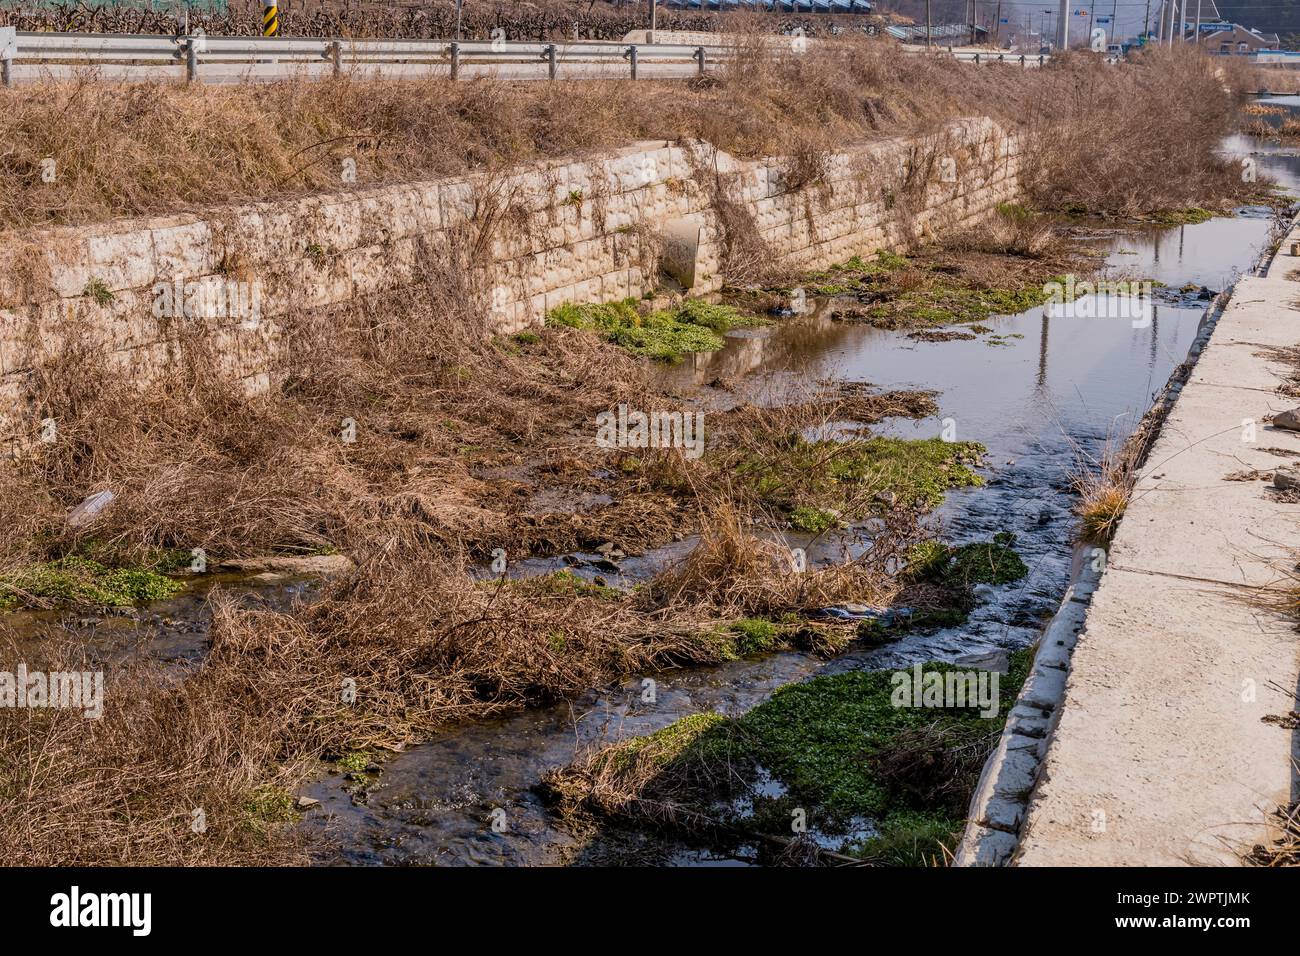 Un ruisseau urbain négligé avec une eau stagnante, entouré de végétation sèche et de béton, en Corée du Sud Banque D'Images